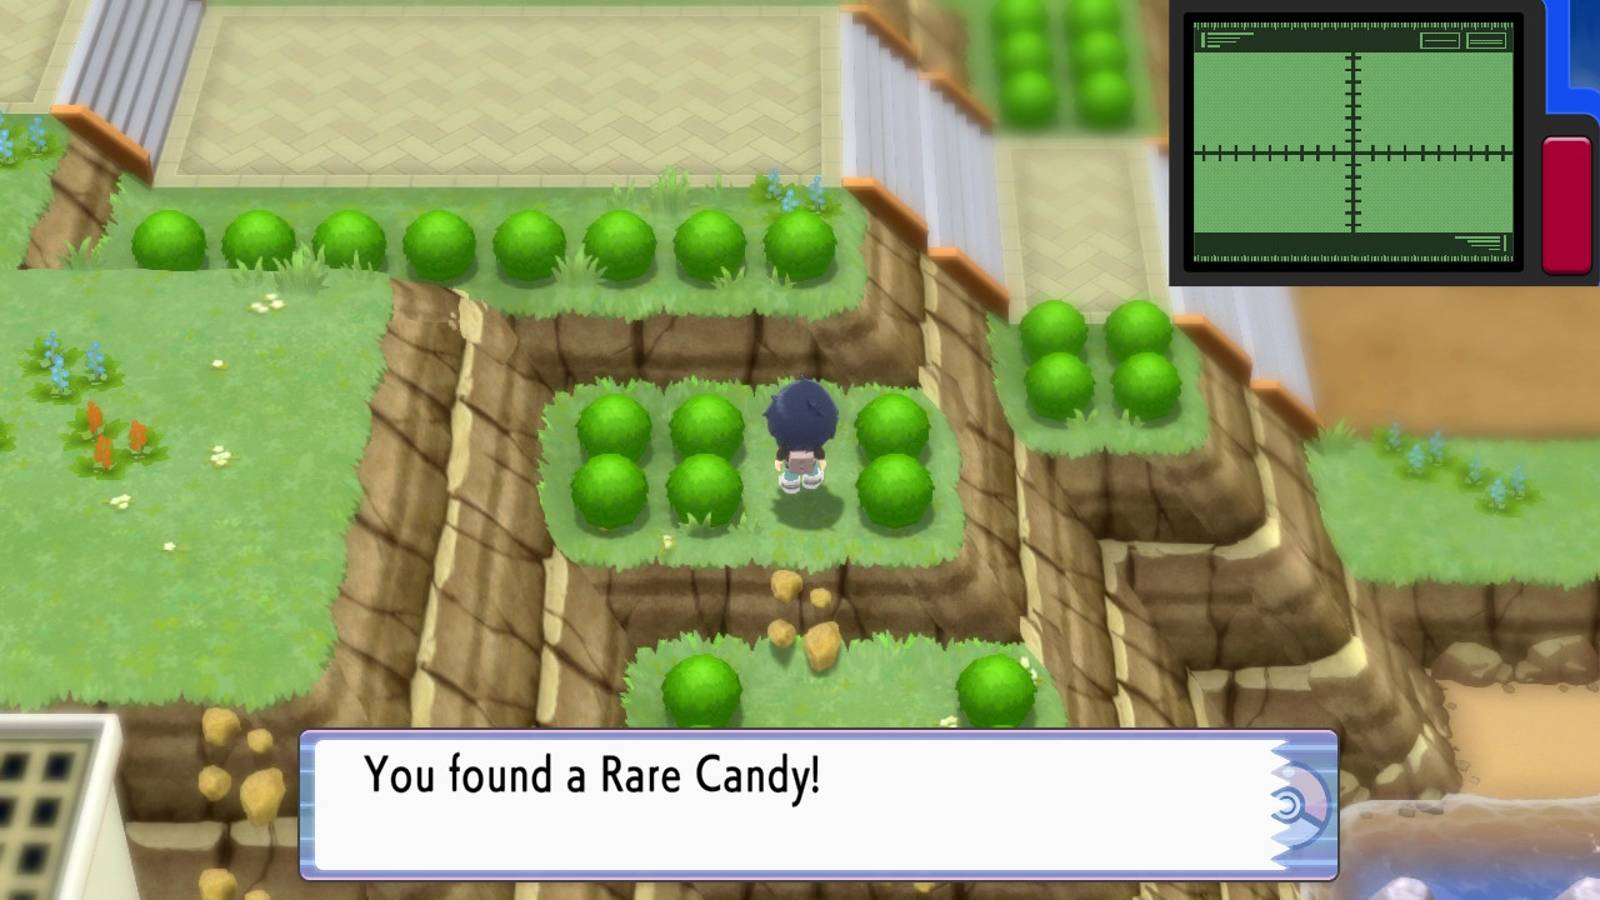 spelare kan hitta sällsynt godis i Pokemon Brilliant Diamond och Shining Pearl Sinnoh region.